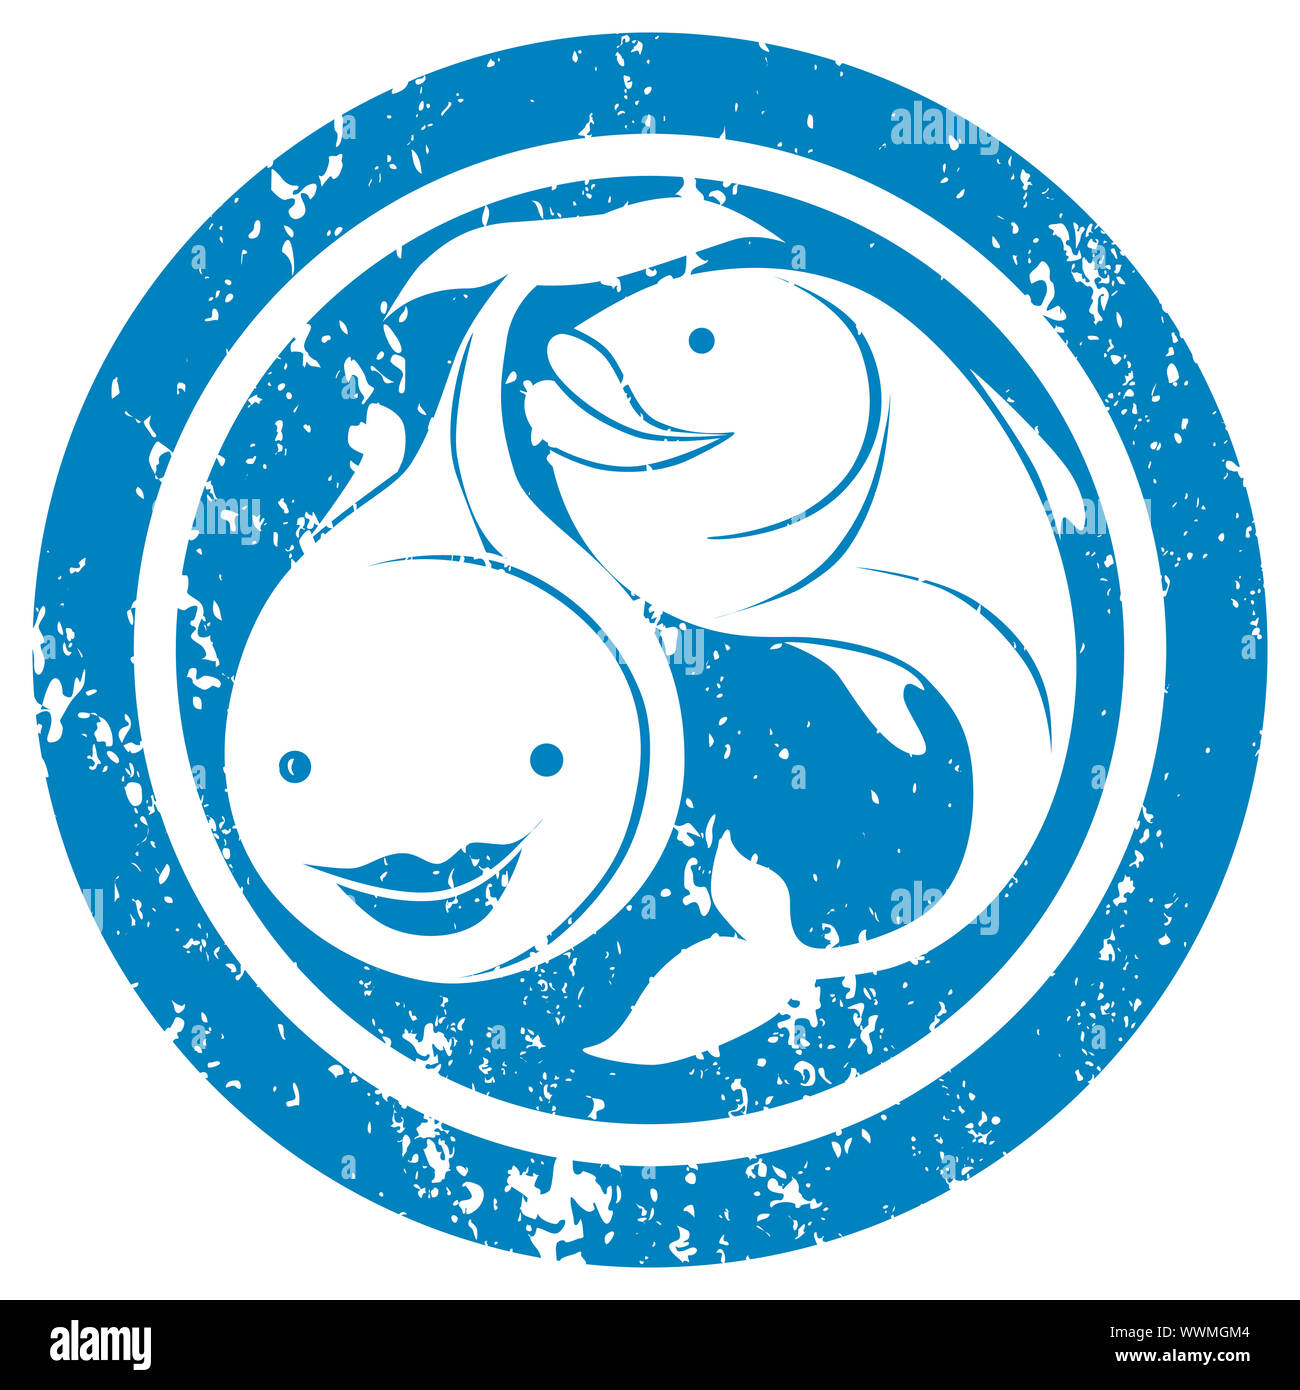 Pisces Fish Zodiac Horoscope Banque D Image Et Photos Alamy